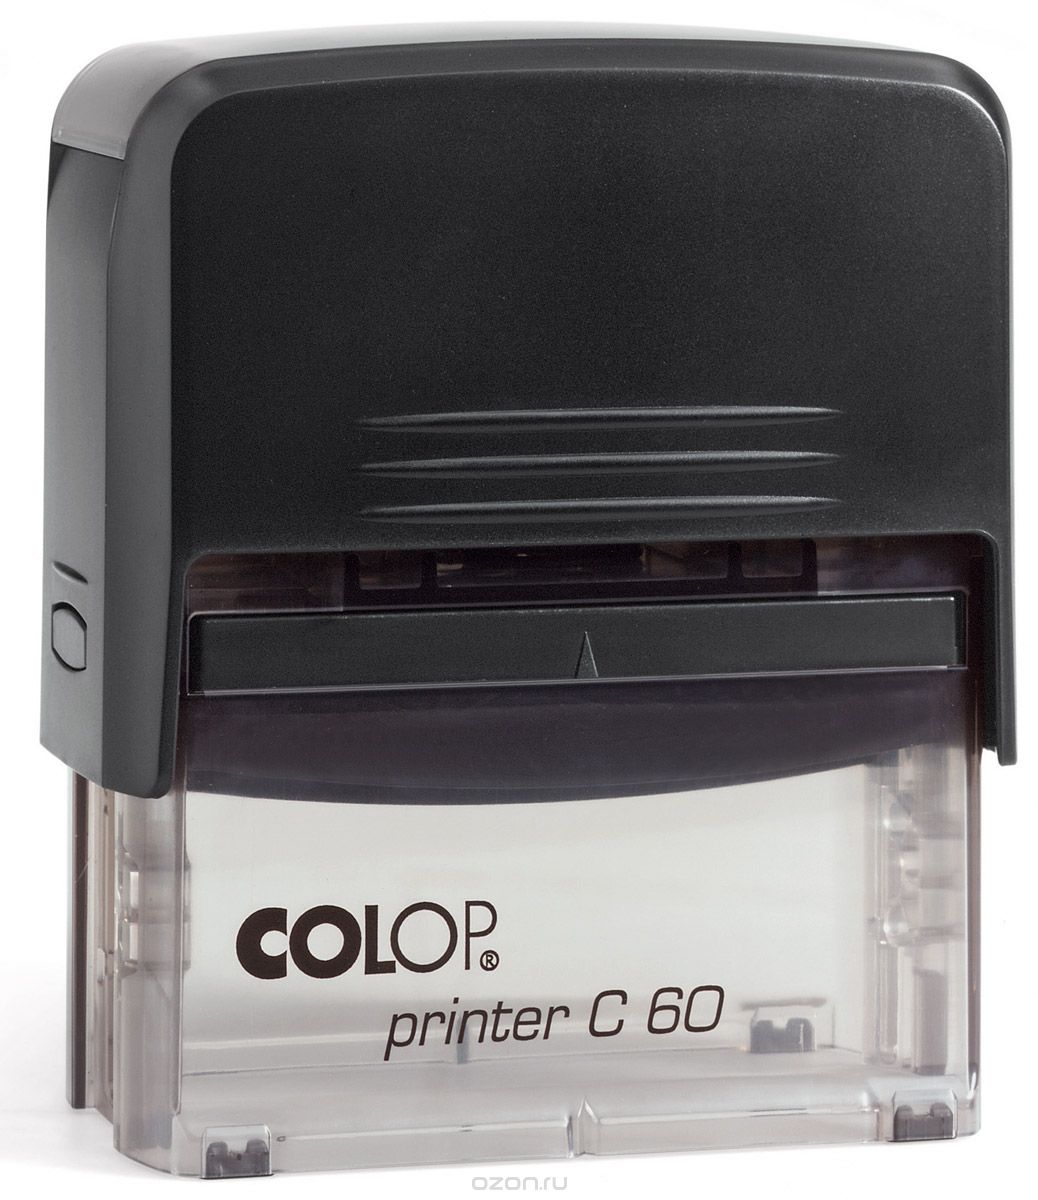 Colop    Printer C60